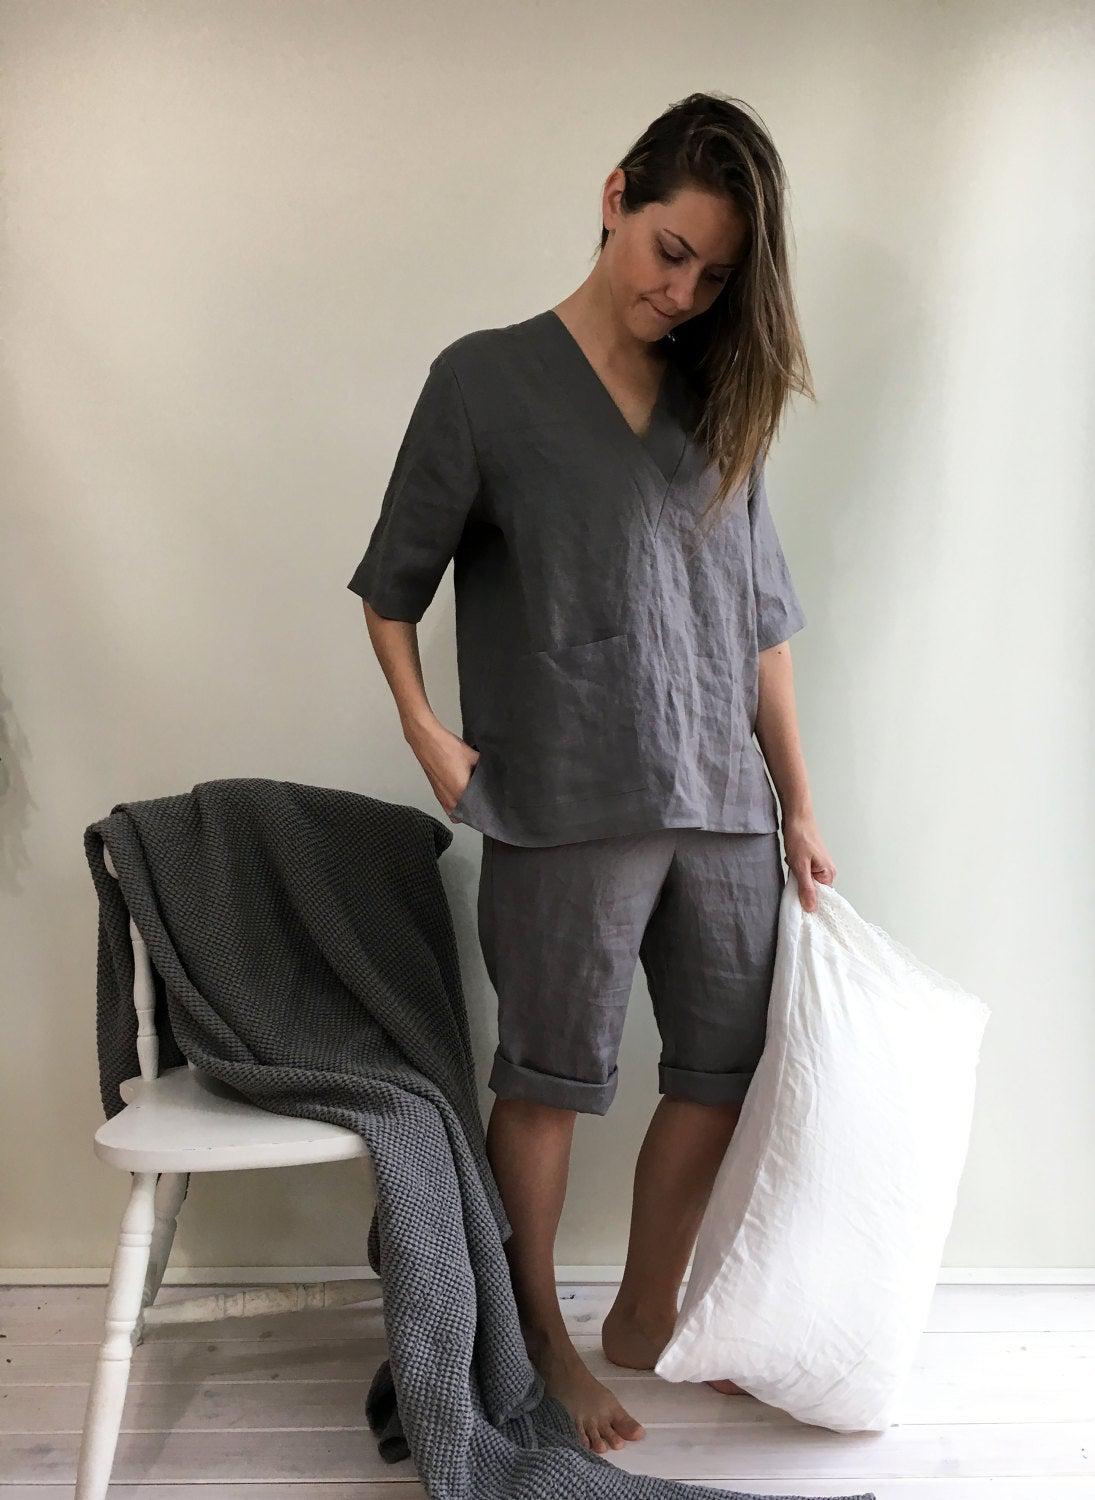 Womens pajamas, linen sleepwear - Linenbee